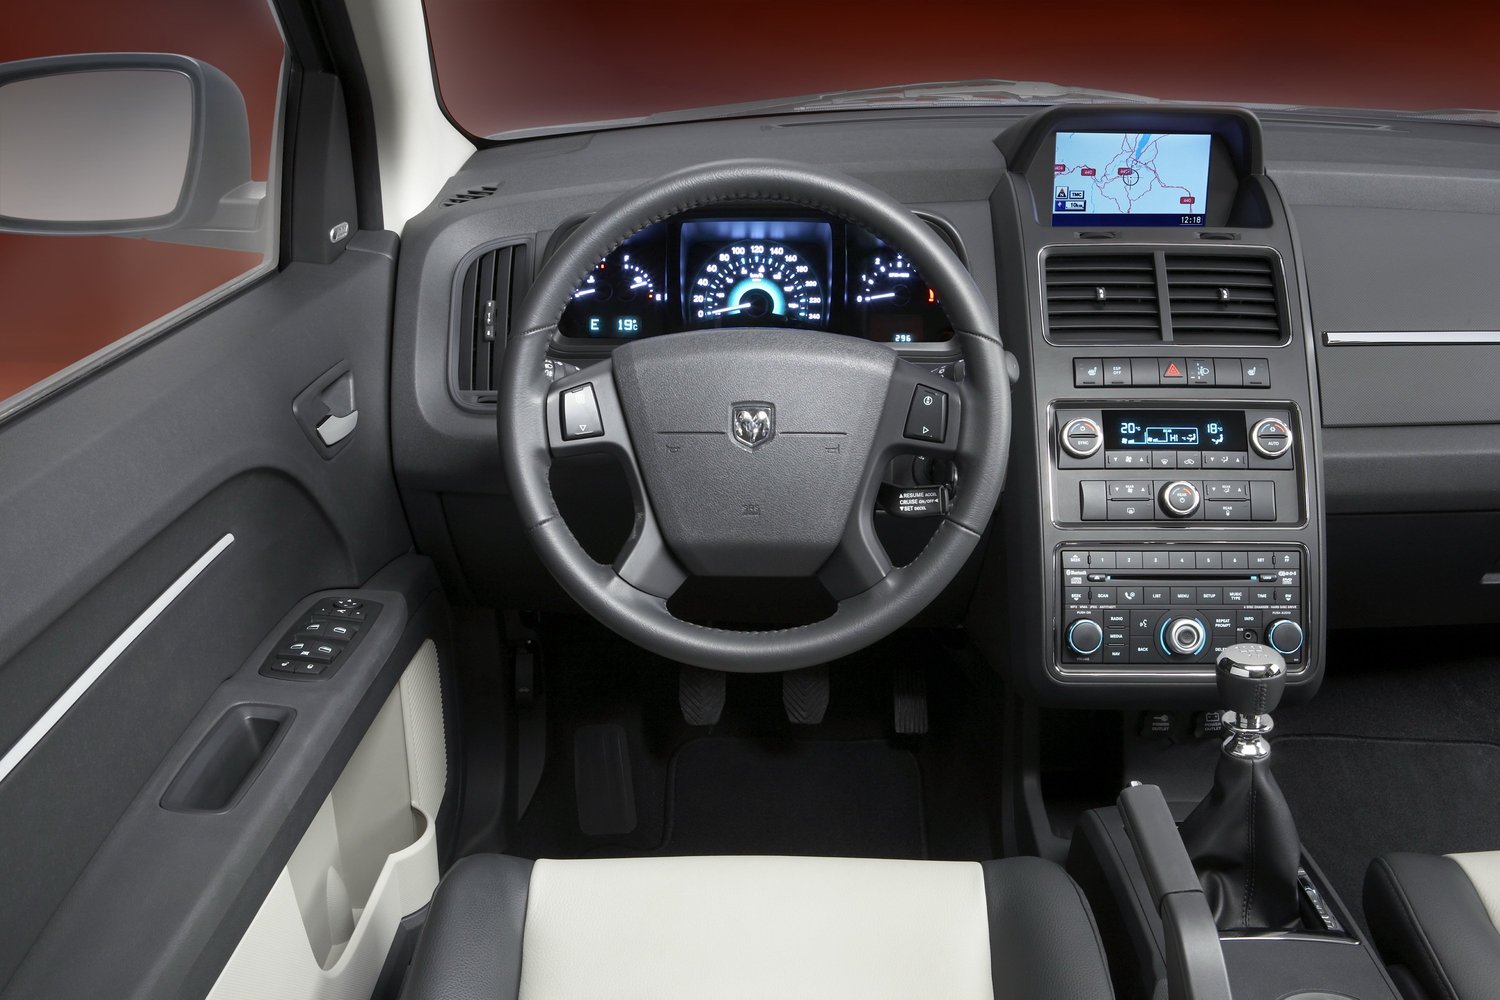 кроссовер Dodge Journey 2008 - 2016г выпуска модификация 2.7 AT (185 л.с.)